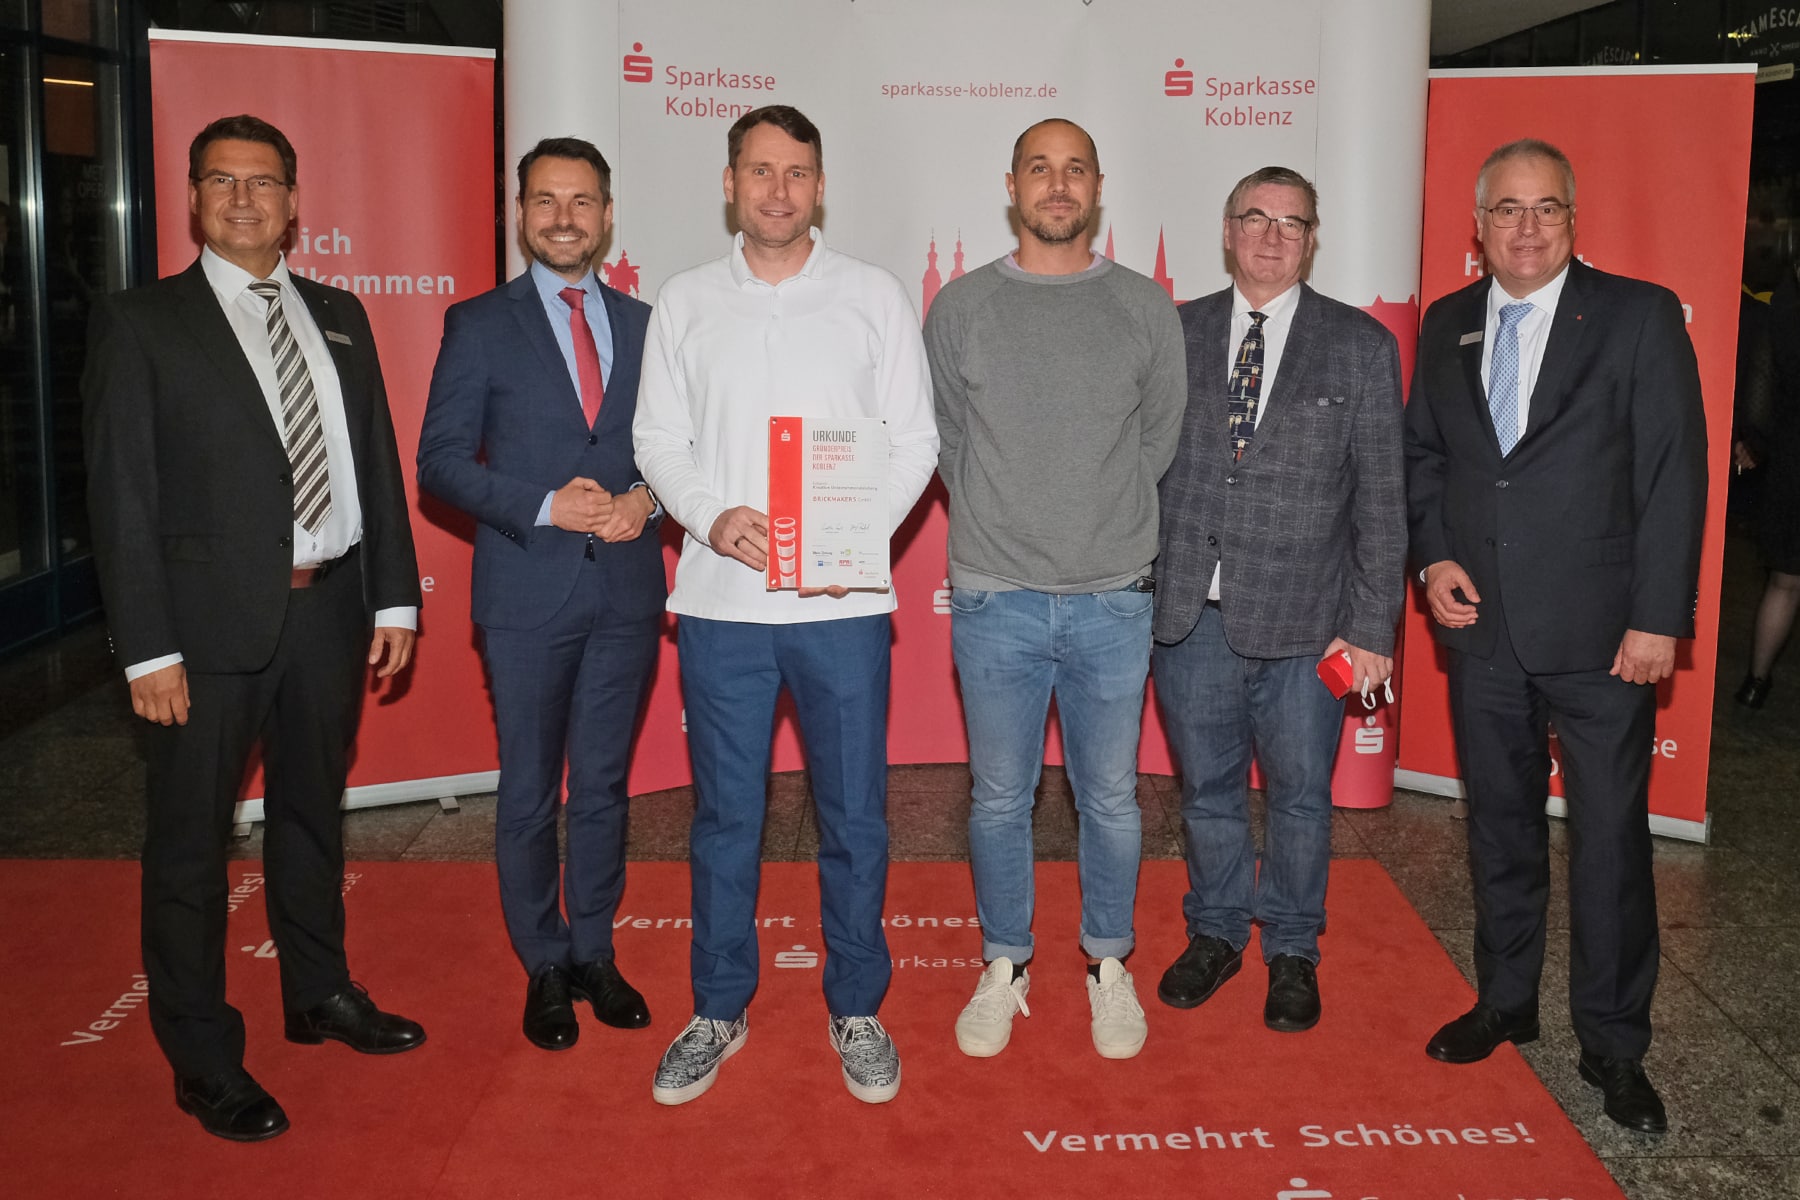 Das Unternehmen Brickmakers GmbH aus Koblenz wurde mit dem Gründerpreis in der Kategorie